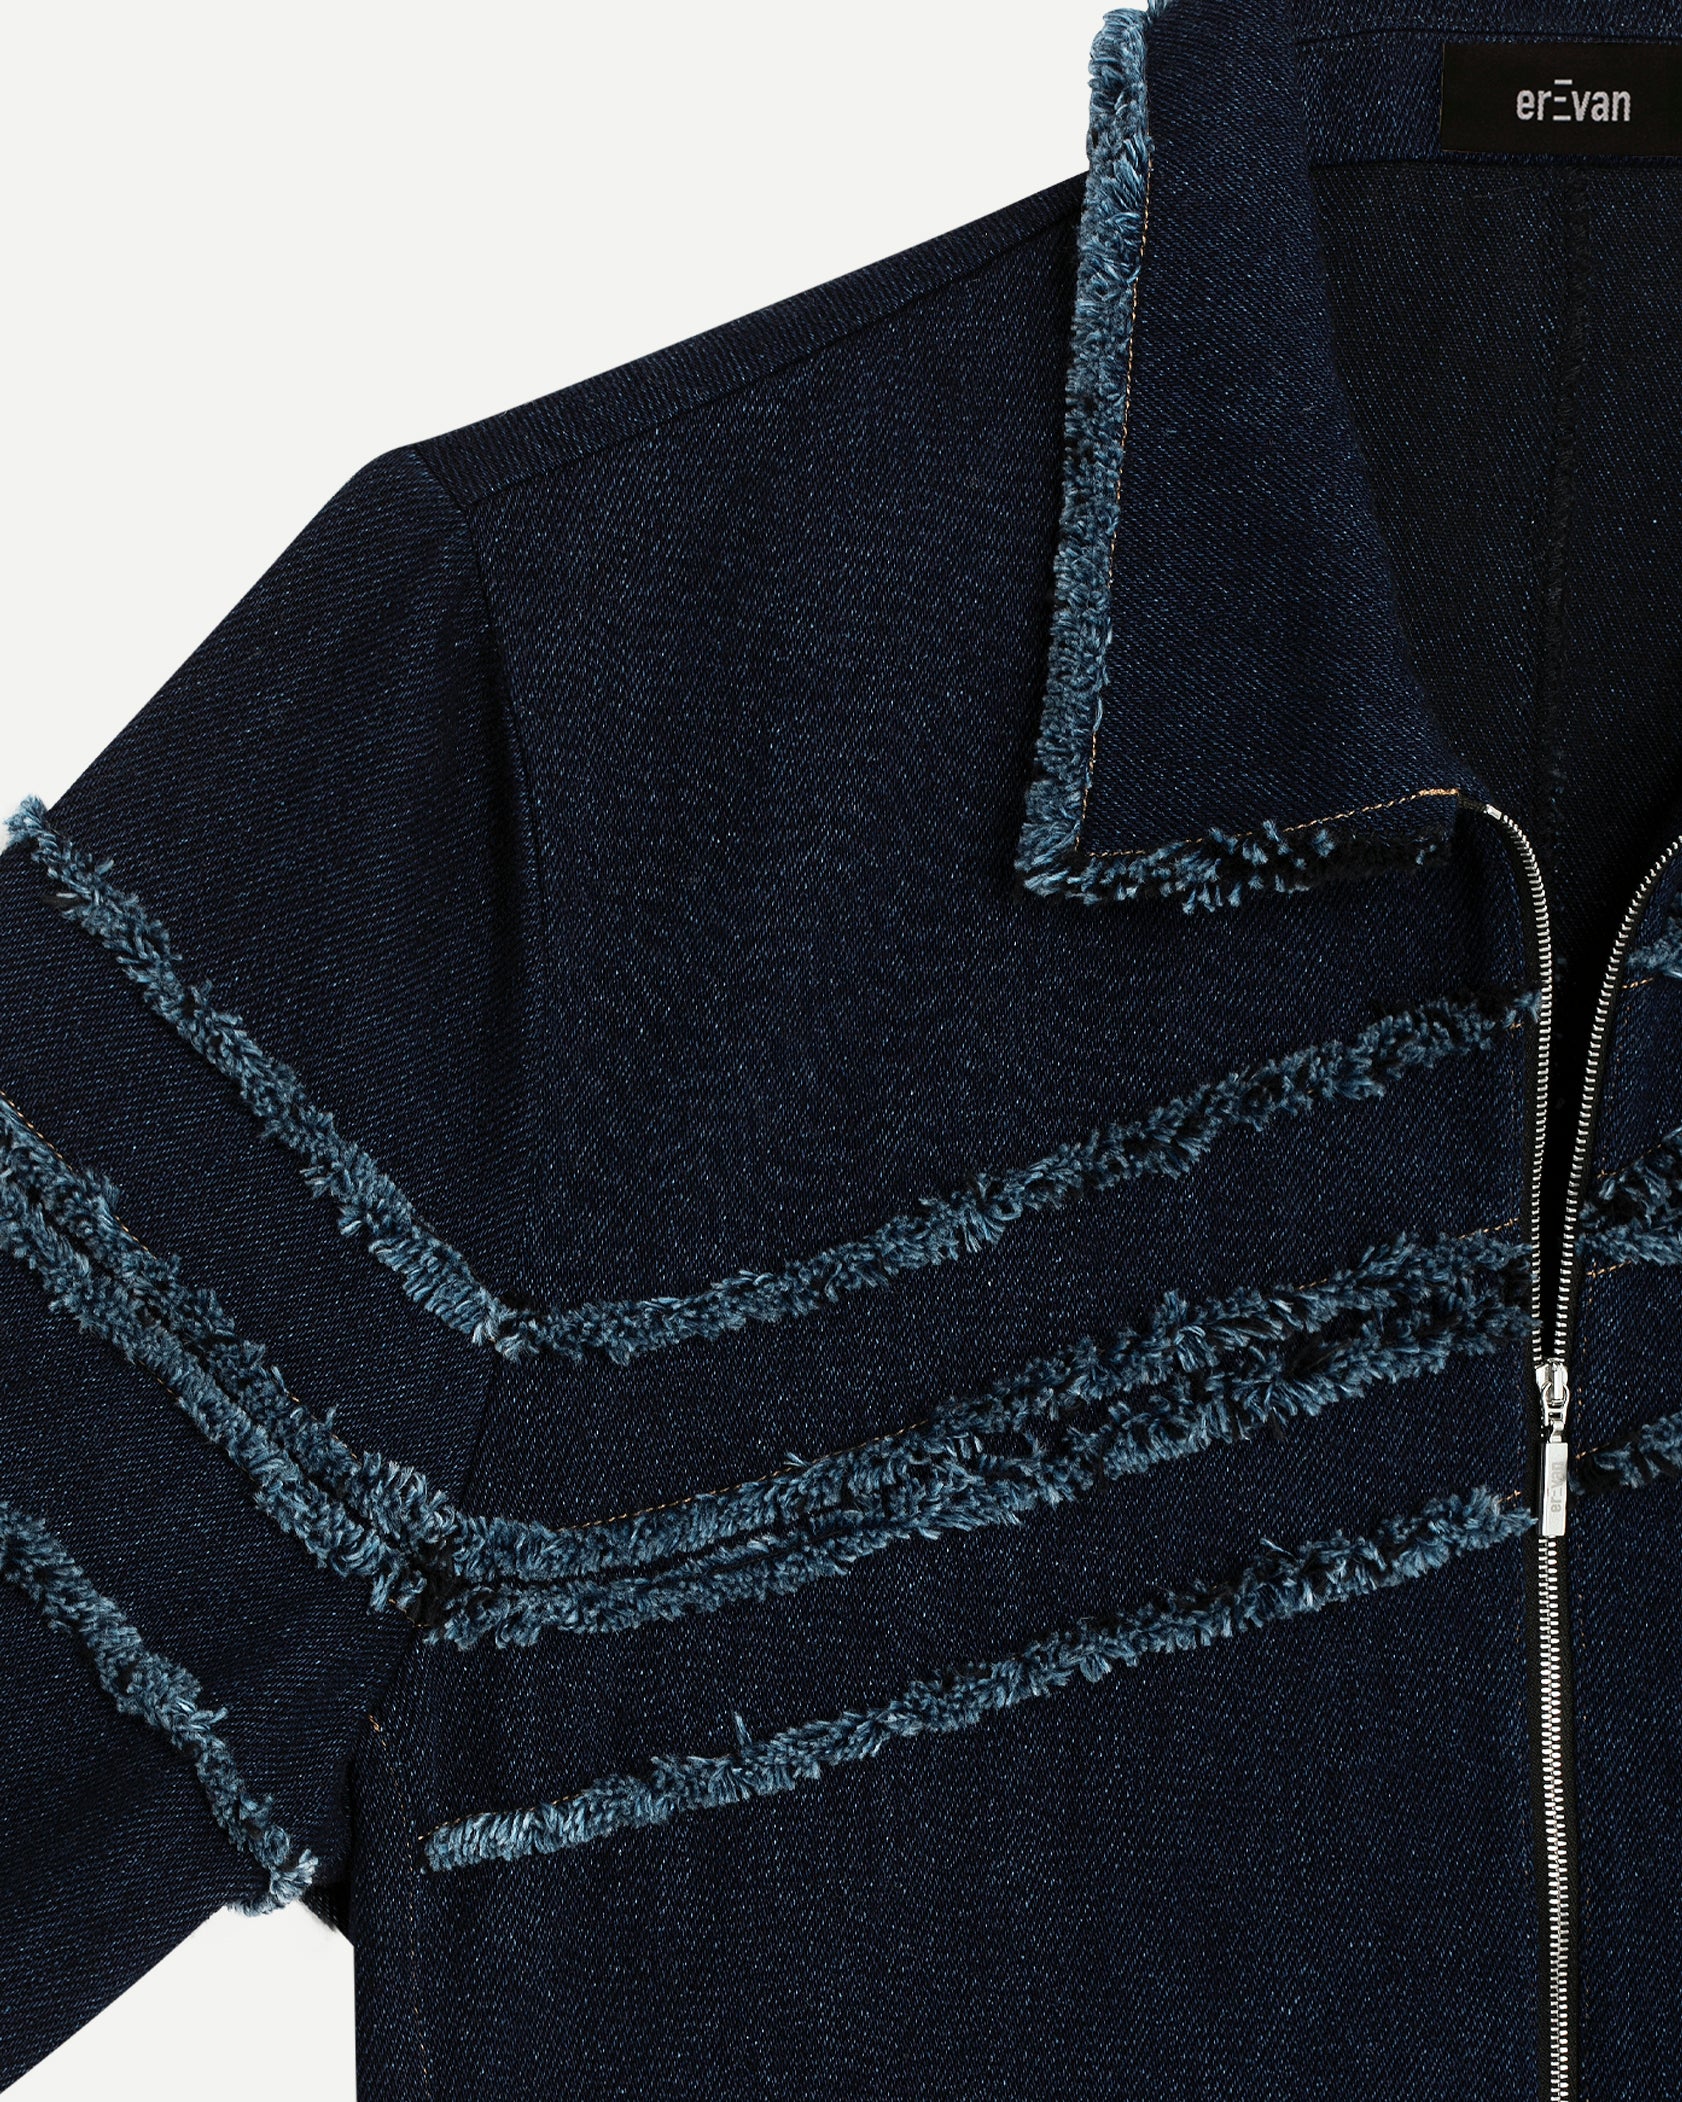 Veste de luxe pour homme Erevan, grand col et détails bords francs, 	ceinture et poignets élastiques, en denim, fabriquée au portugal